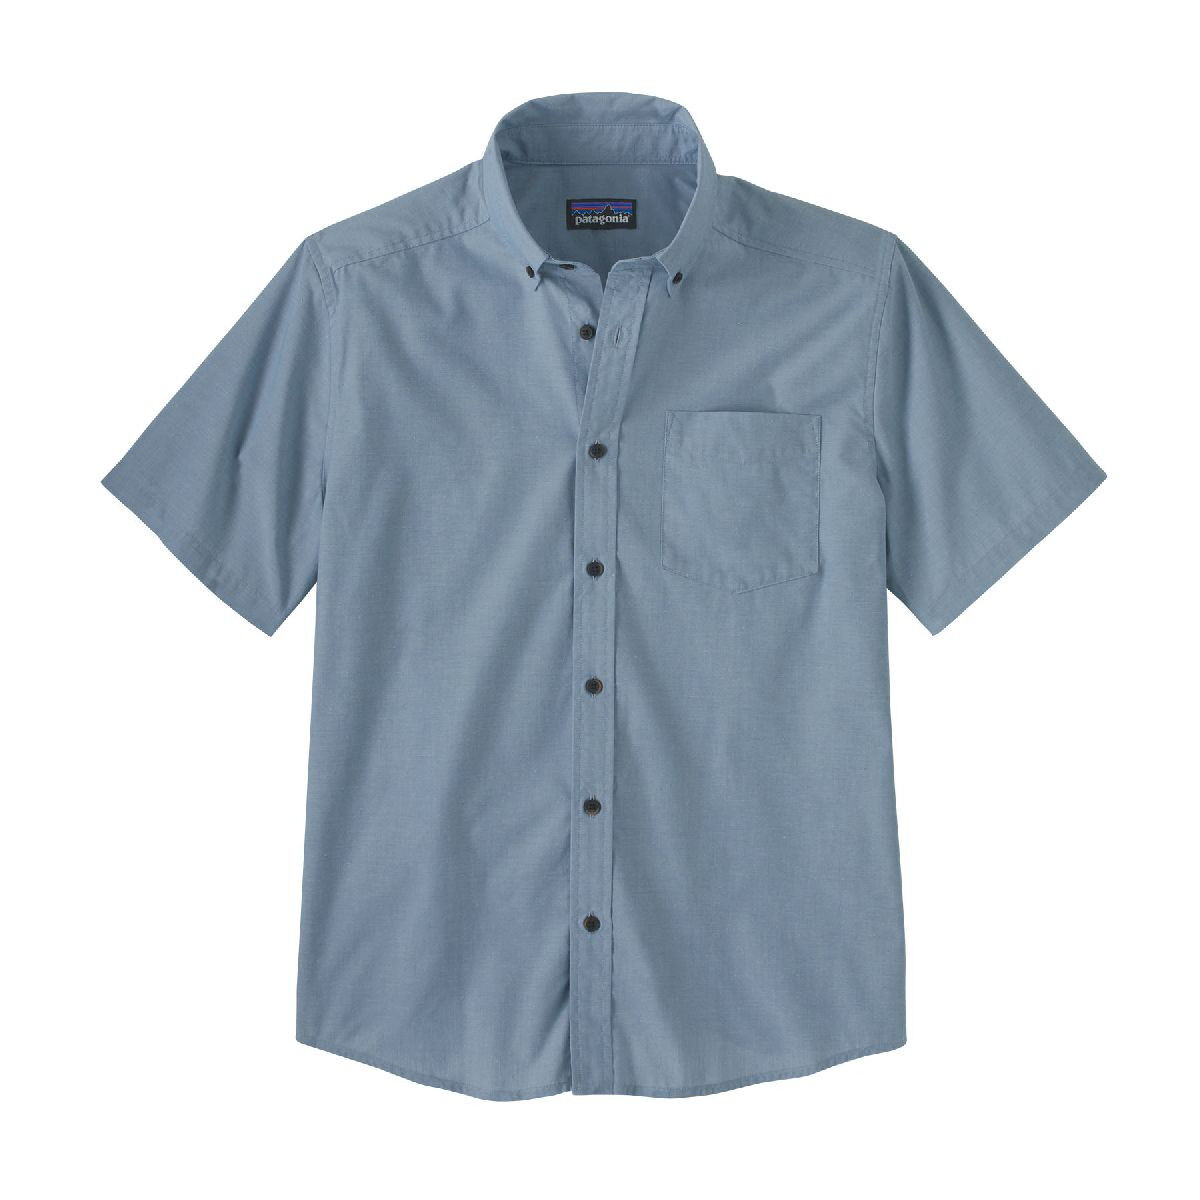 Patagonia Daily Shirt - Overhemd - Heren